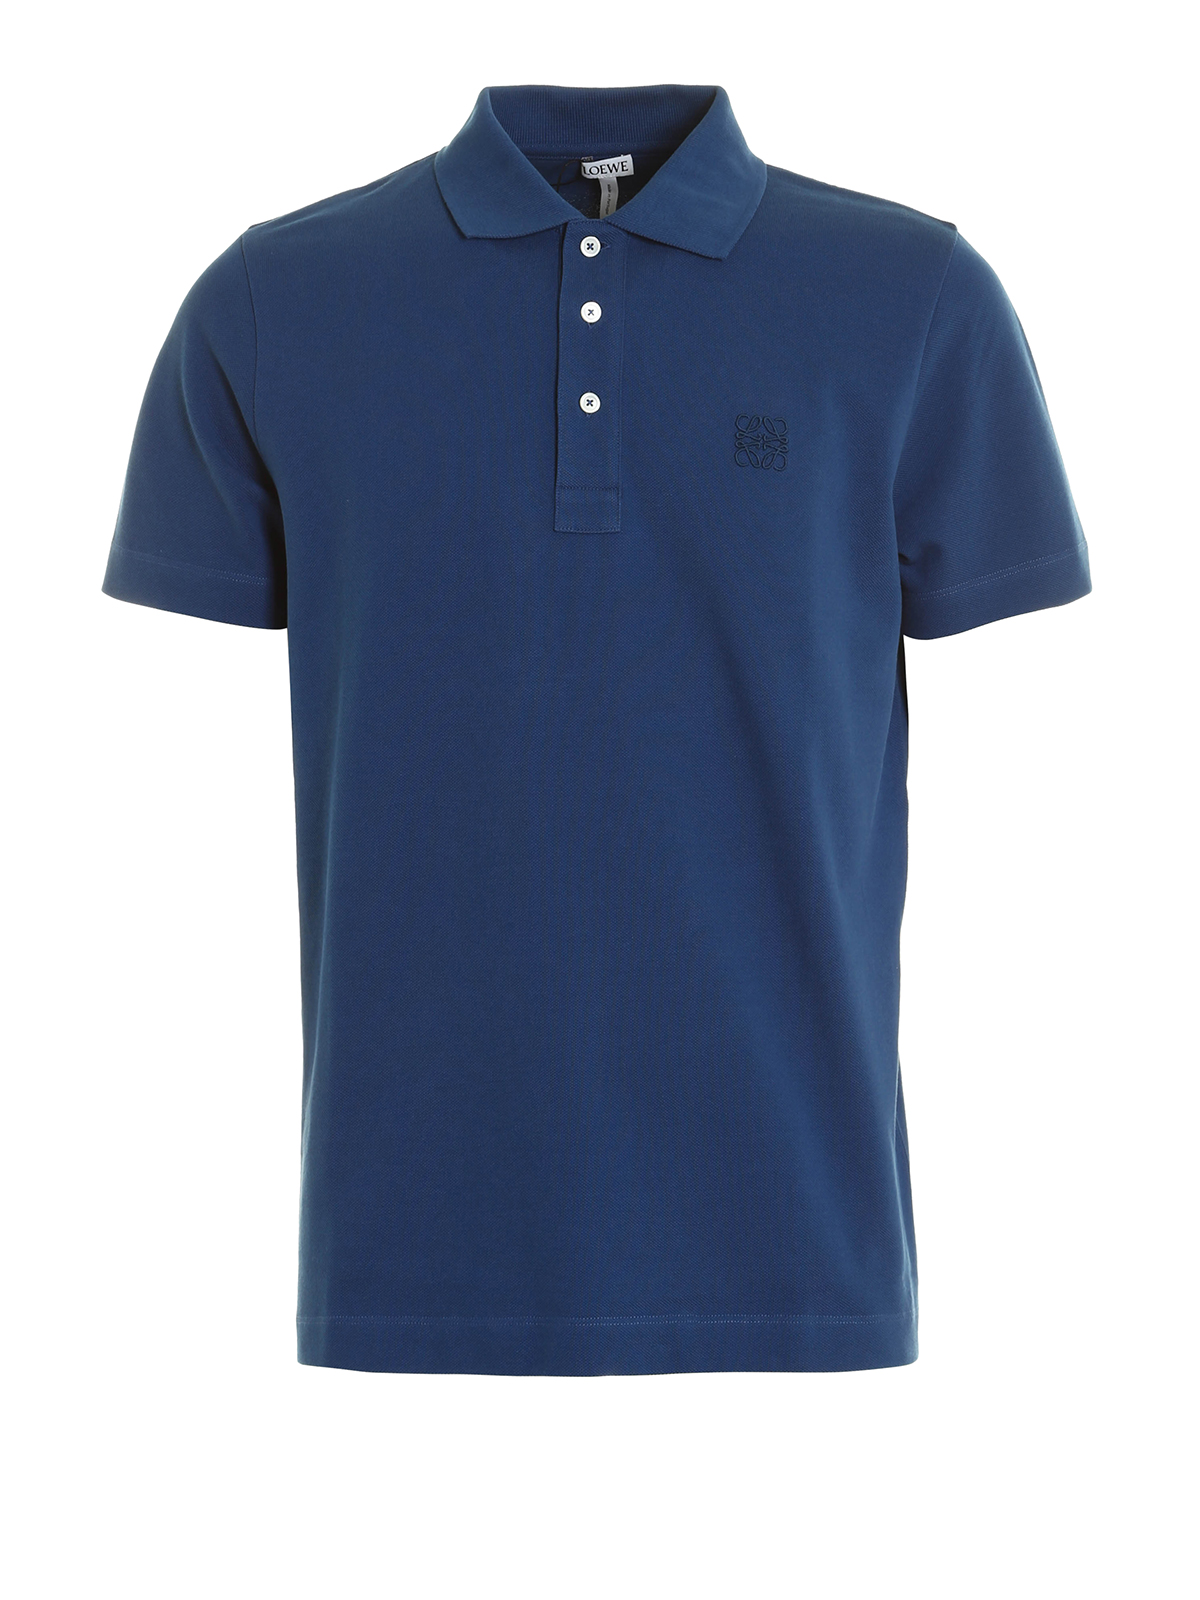 ポロシャツ Loewe - ポロシャツ メンズ - ブルー - H2179820CR5290